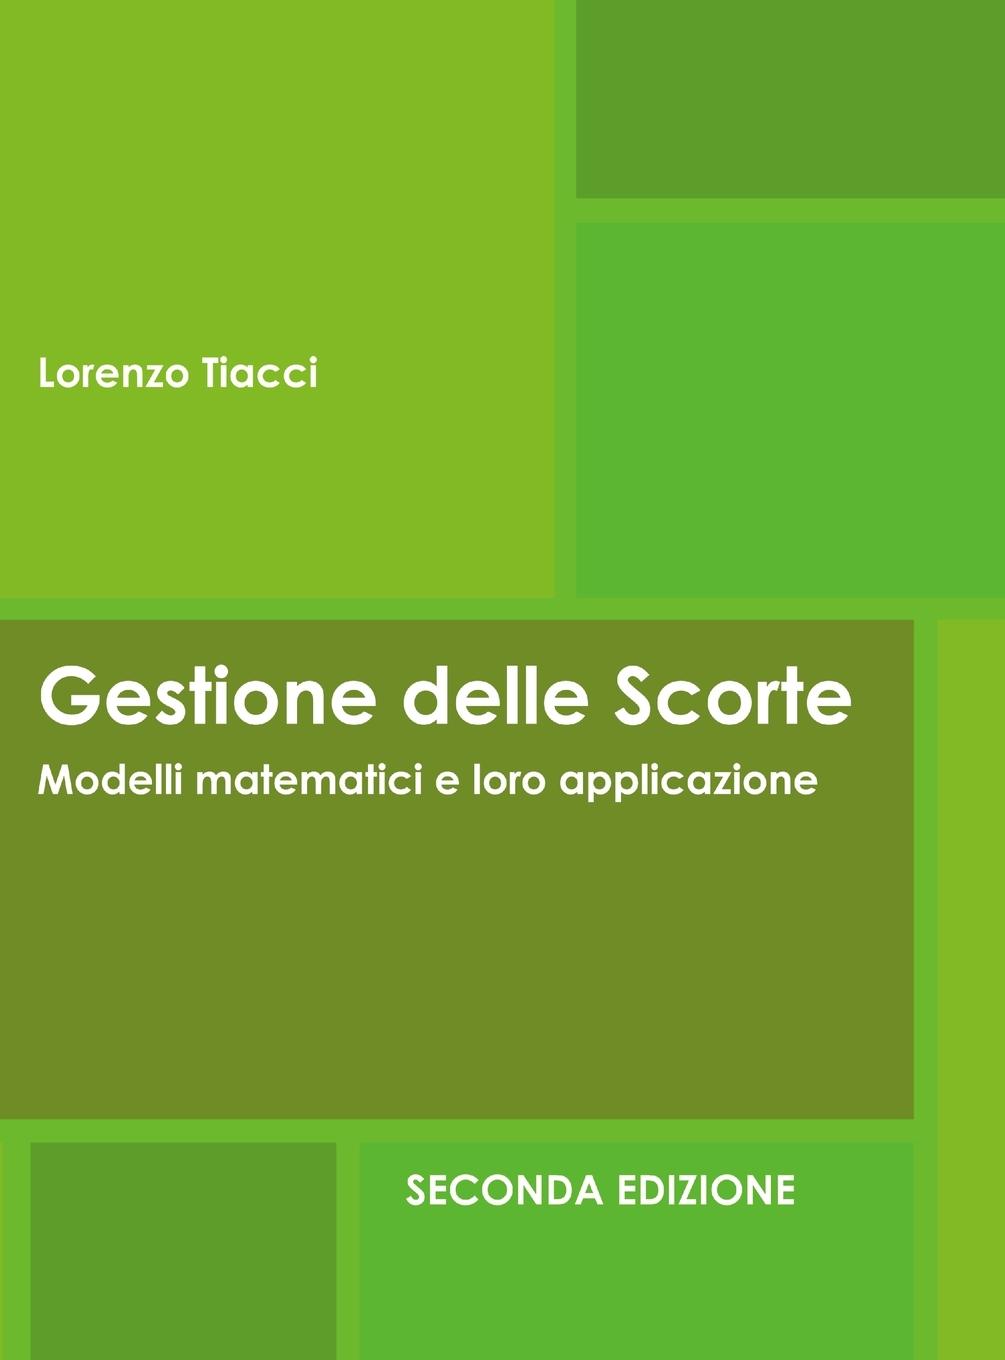 Книга Gestione delle Scorte - Modelli matematici e loro applicazione - Seconda Edizione 